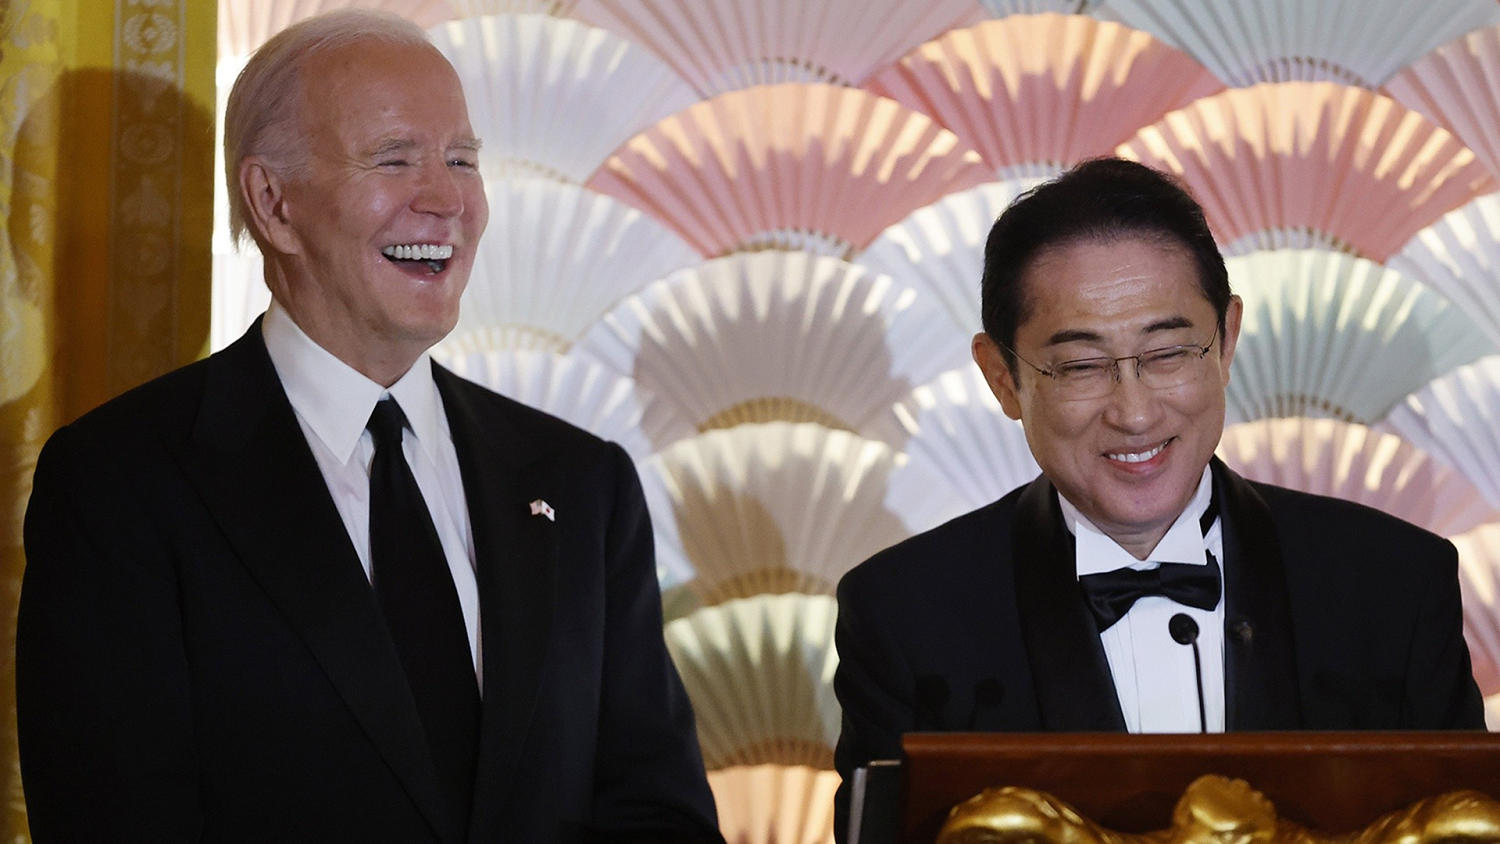 Inside Biden’s star-studded state dinner for Japan’s prime minster